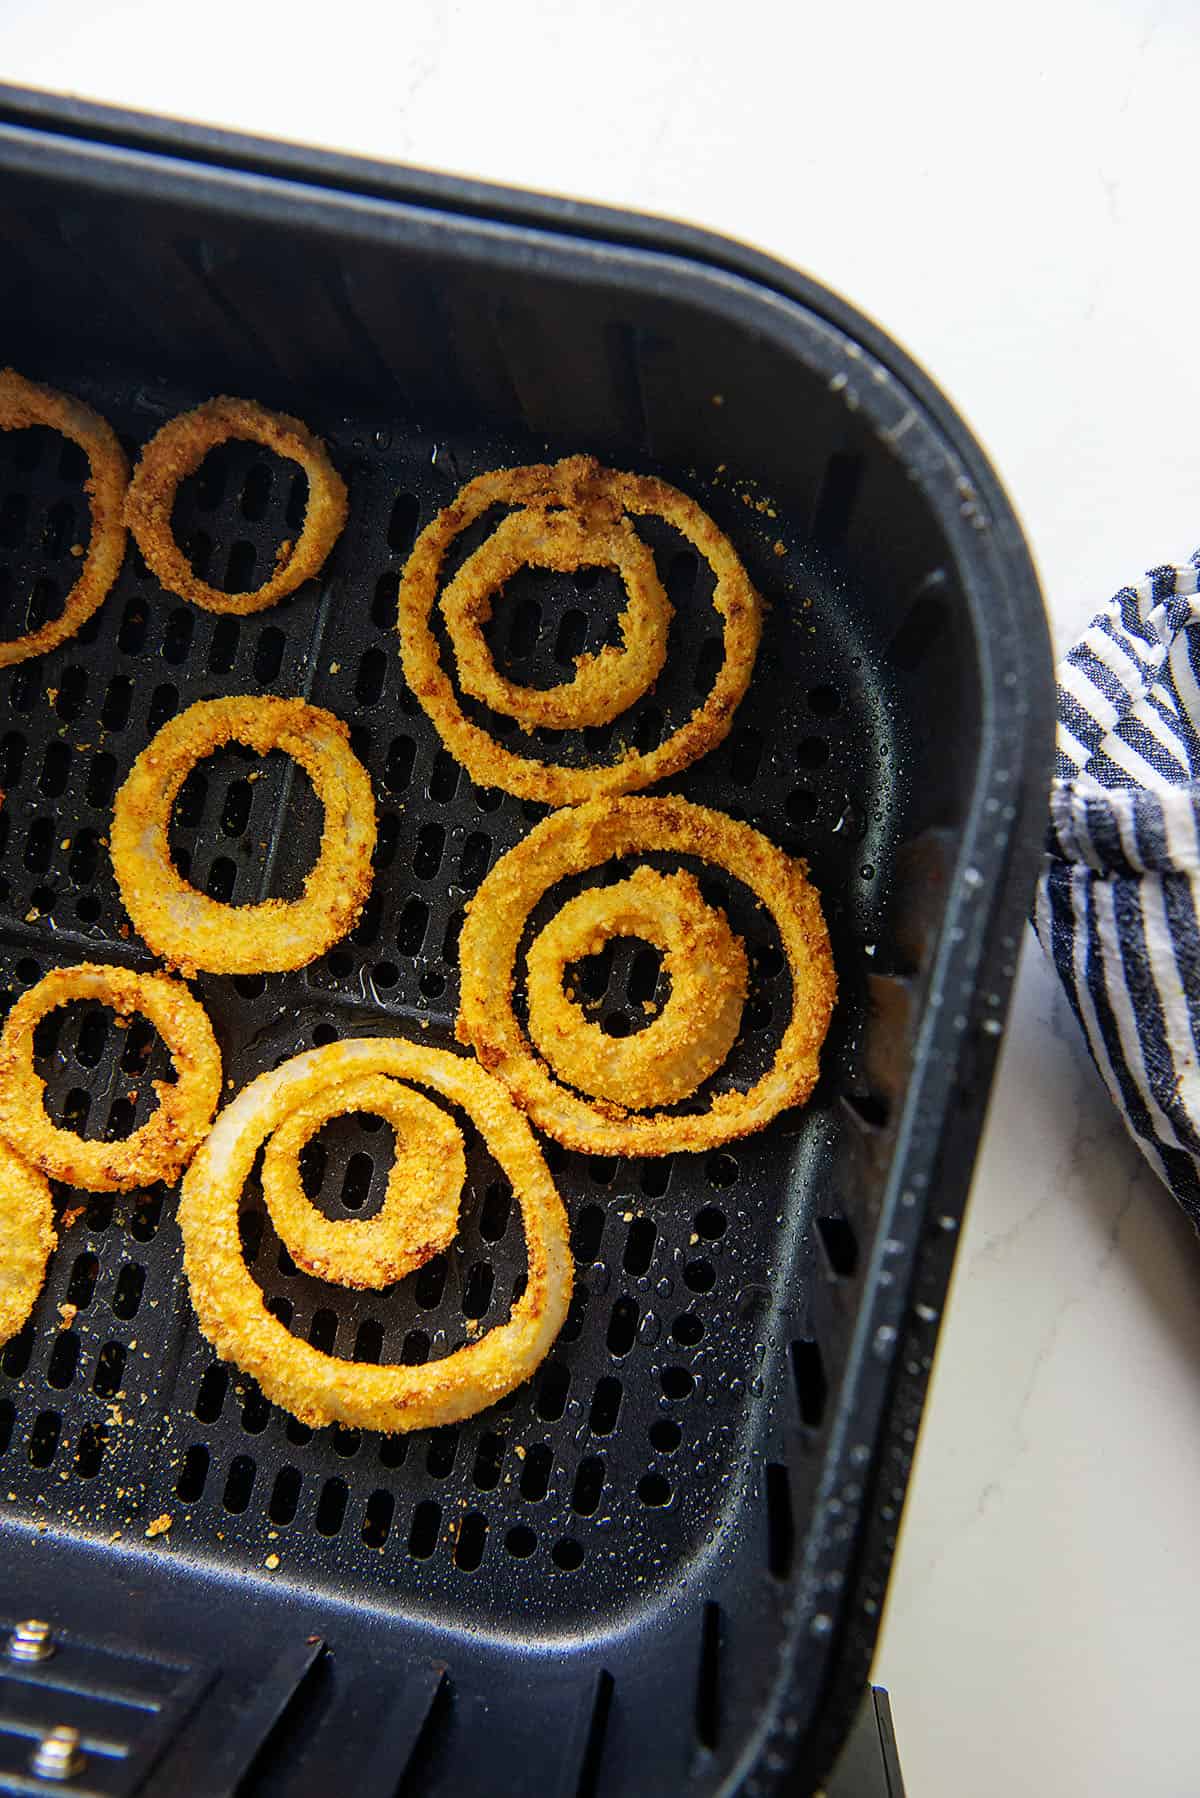 keto onion rings in air fryer basket.